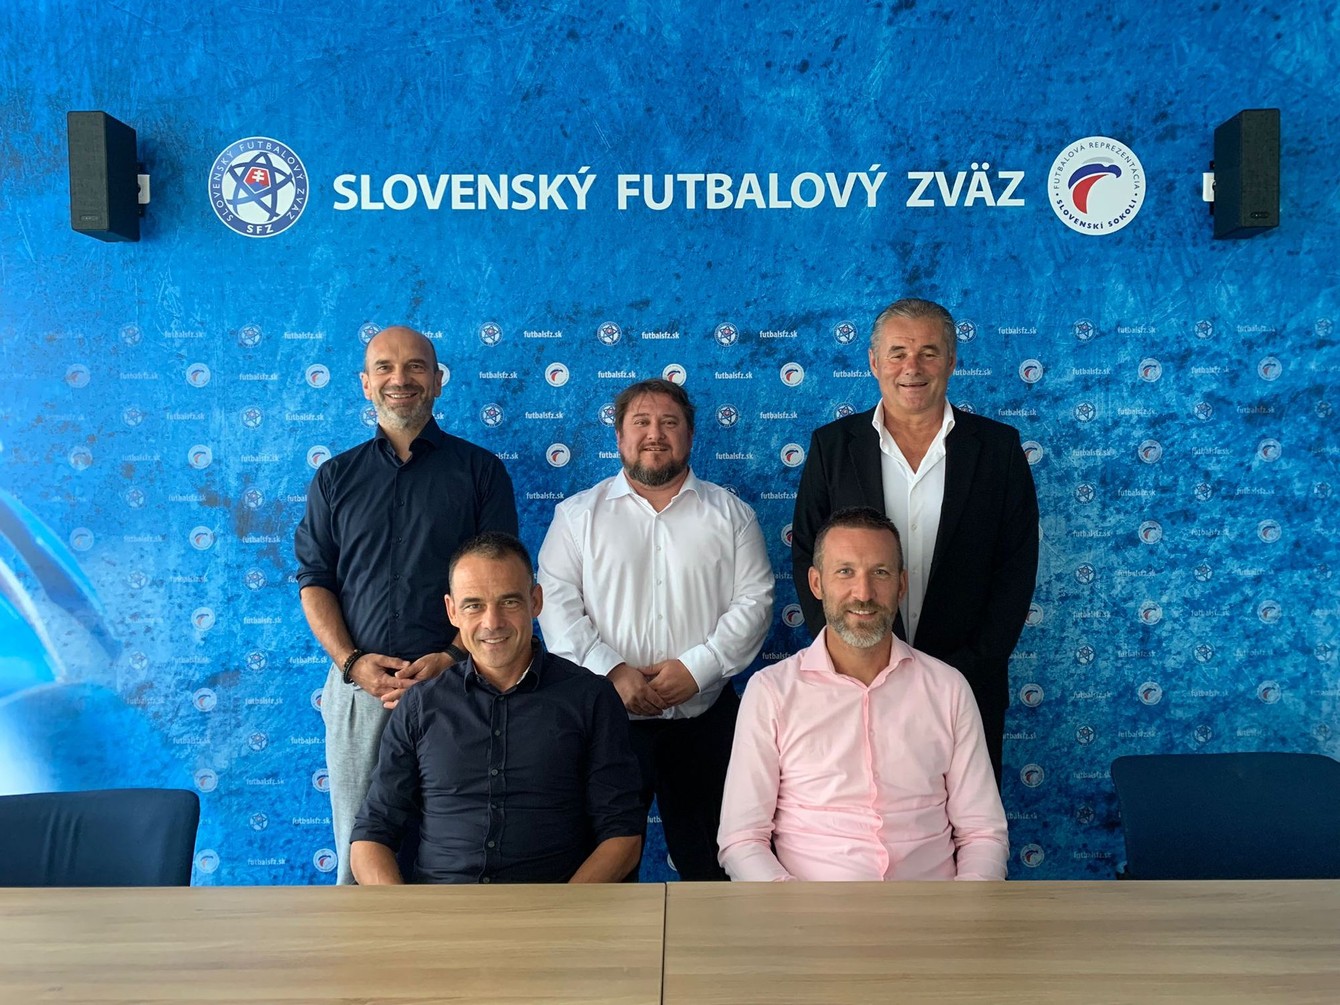 Čerství držitelia UEFA Pro licencie, vľavo dolu Lukáš Jarolím, vedľa neho Róbert Lukáč, nad nimi členovia skúšobnej komisie zľava Oto Brunegraf, Zsolt Pakusza a Ivan Galád.